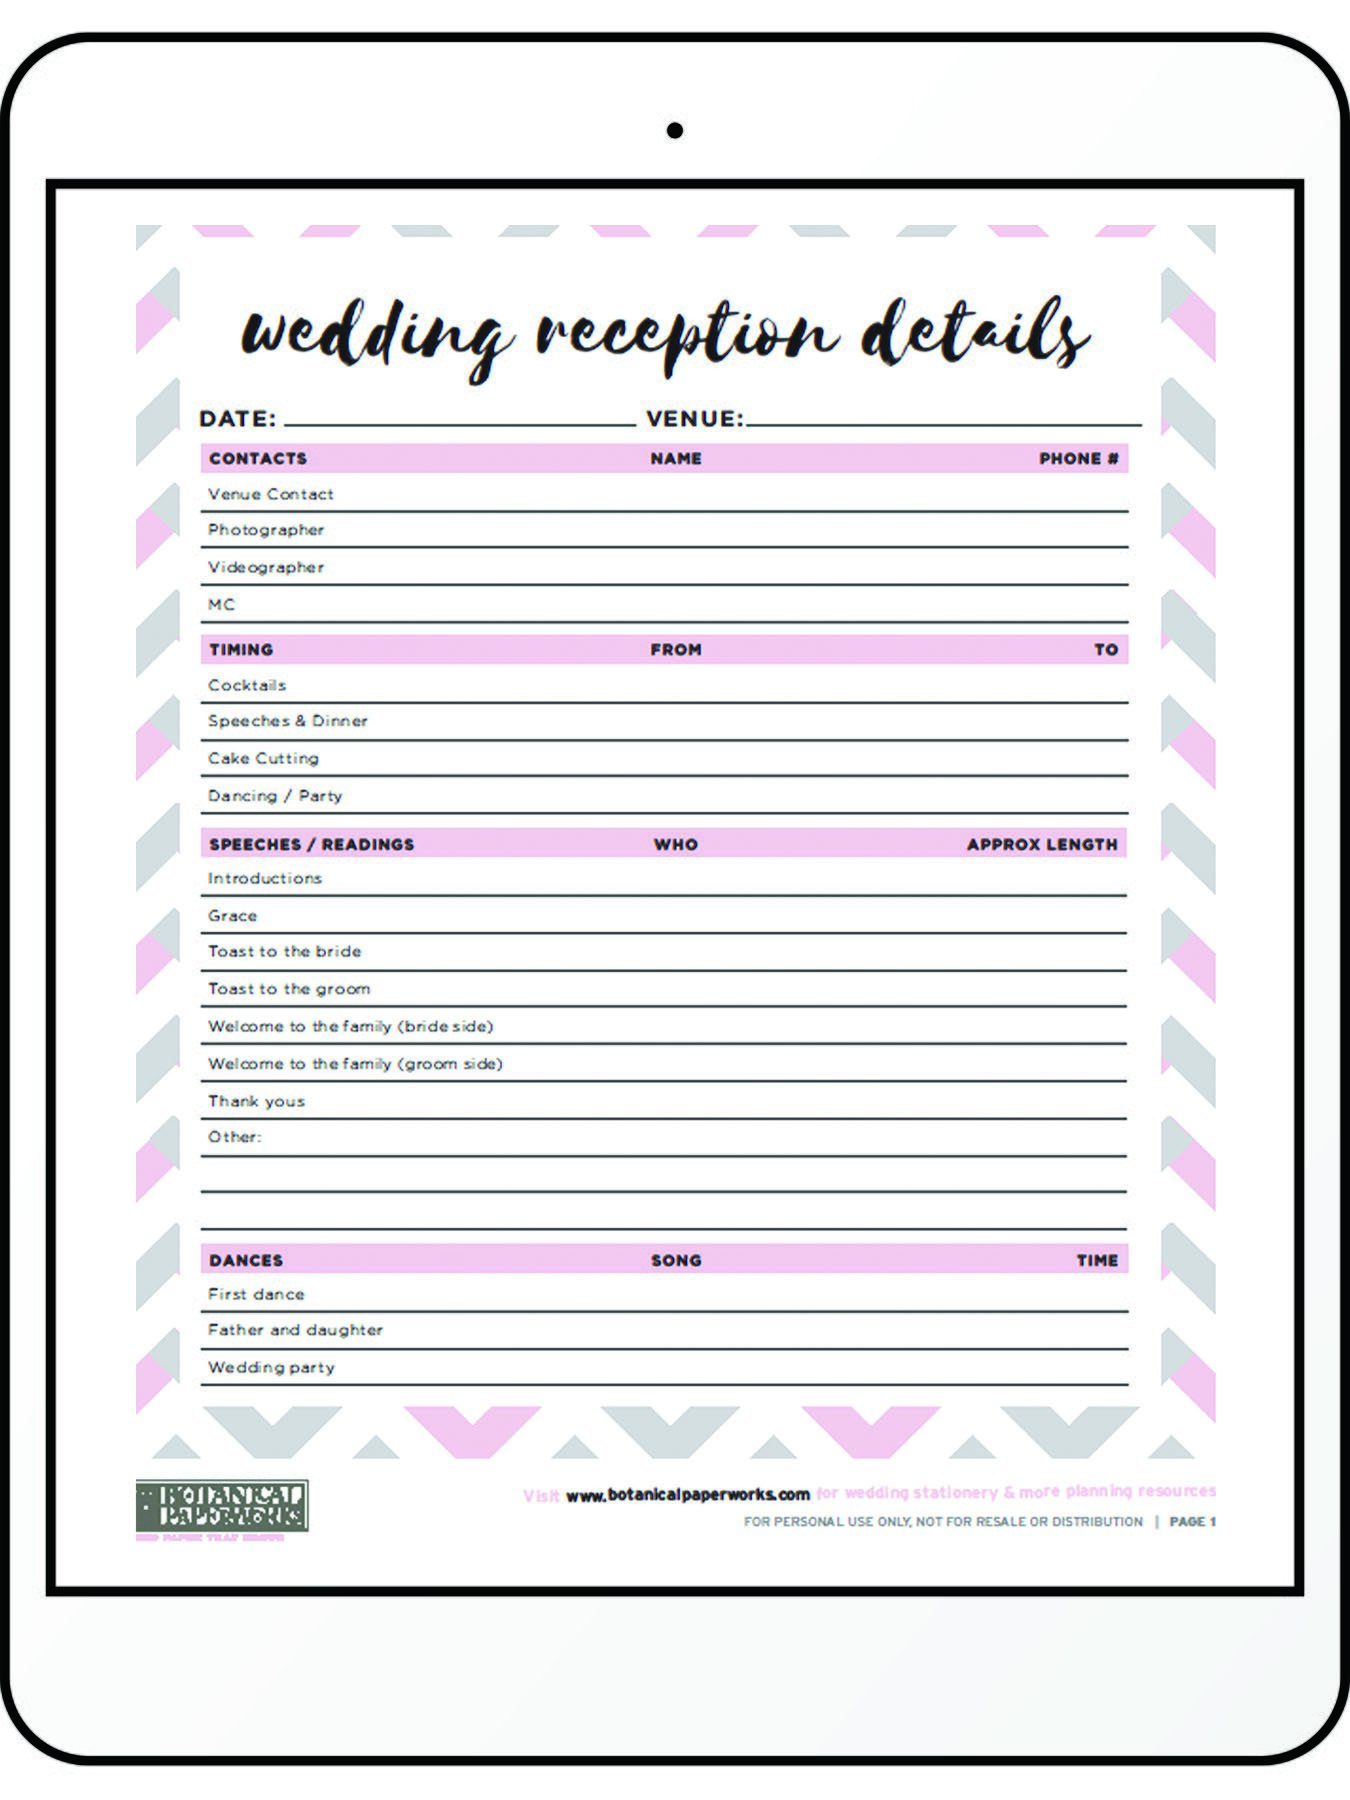 printable-wedding-reception-timeline-printable-world-holiday